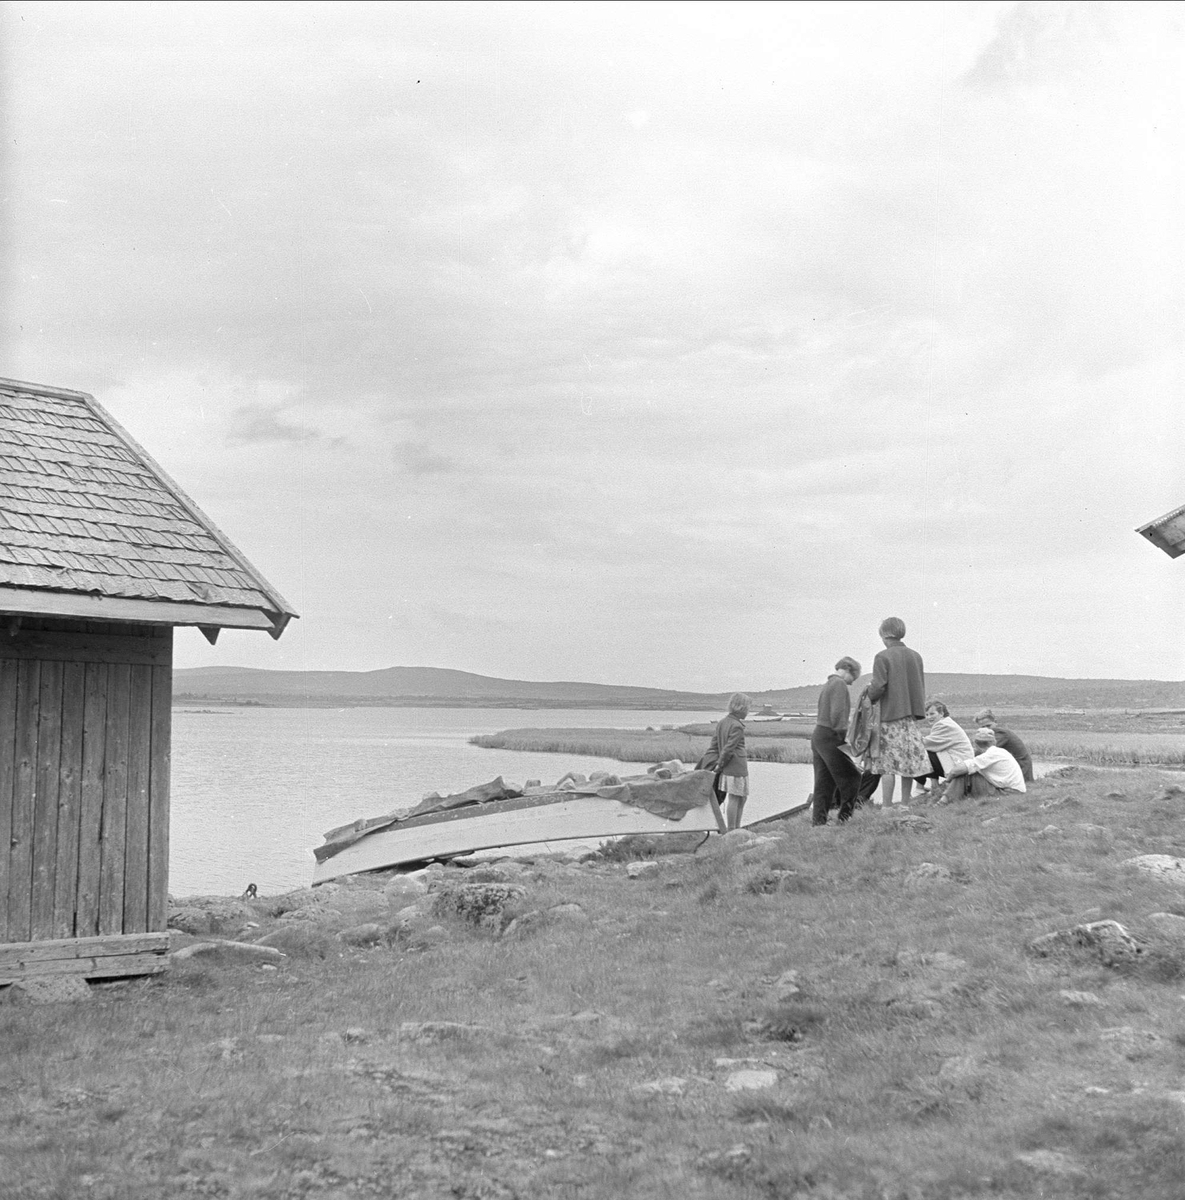 Sjusjøen, Ringsaker, Hedmark, juli 1954. Mennesker i fjellandskap. Vann, båter og buer.